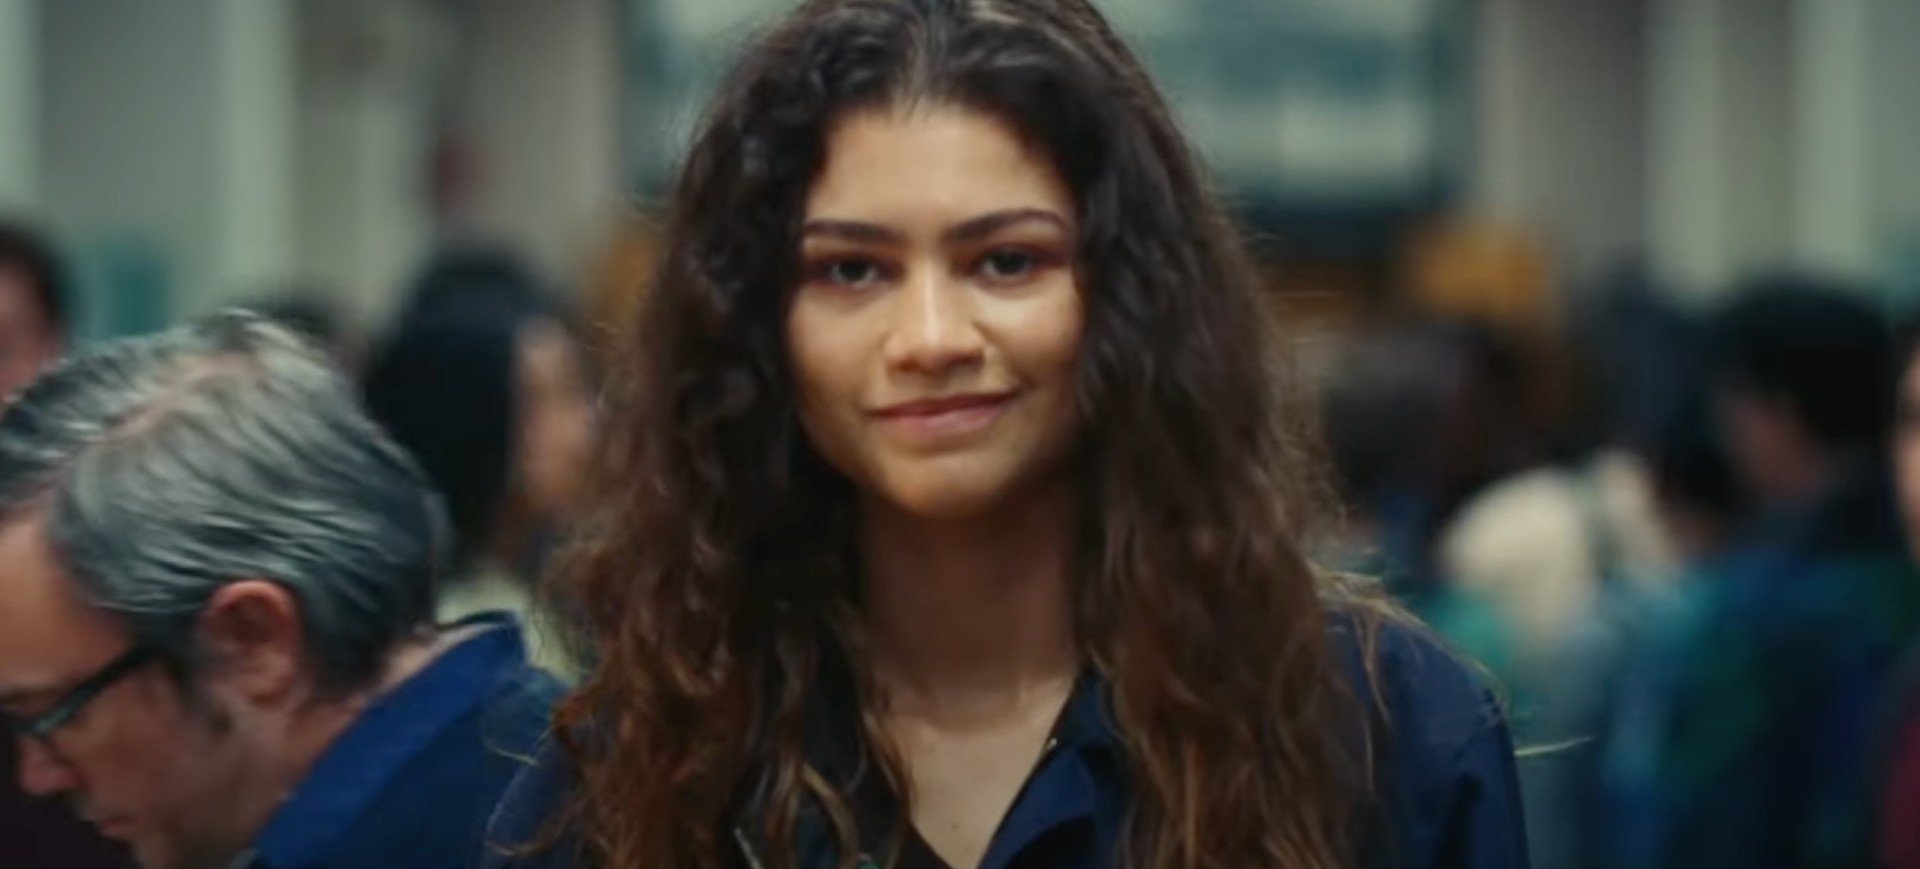 Uma cena da temporada 2 de Euphoria: na frente, Rue Bennet, personagem de Zendaya, aparece com um sorriso tímido; ao fundo há uma porção de pessoas aleatórias passando